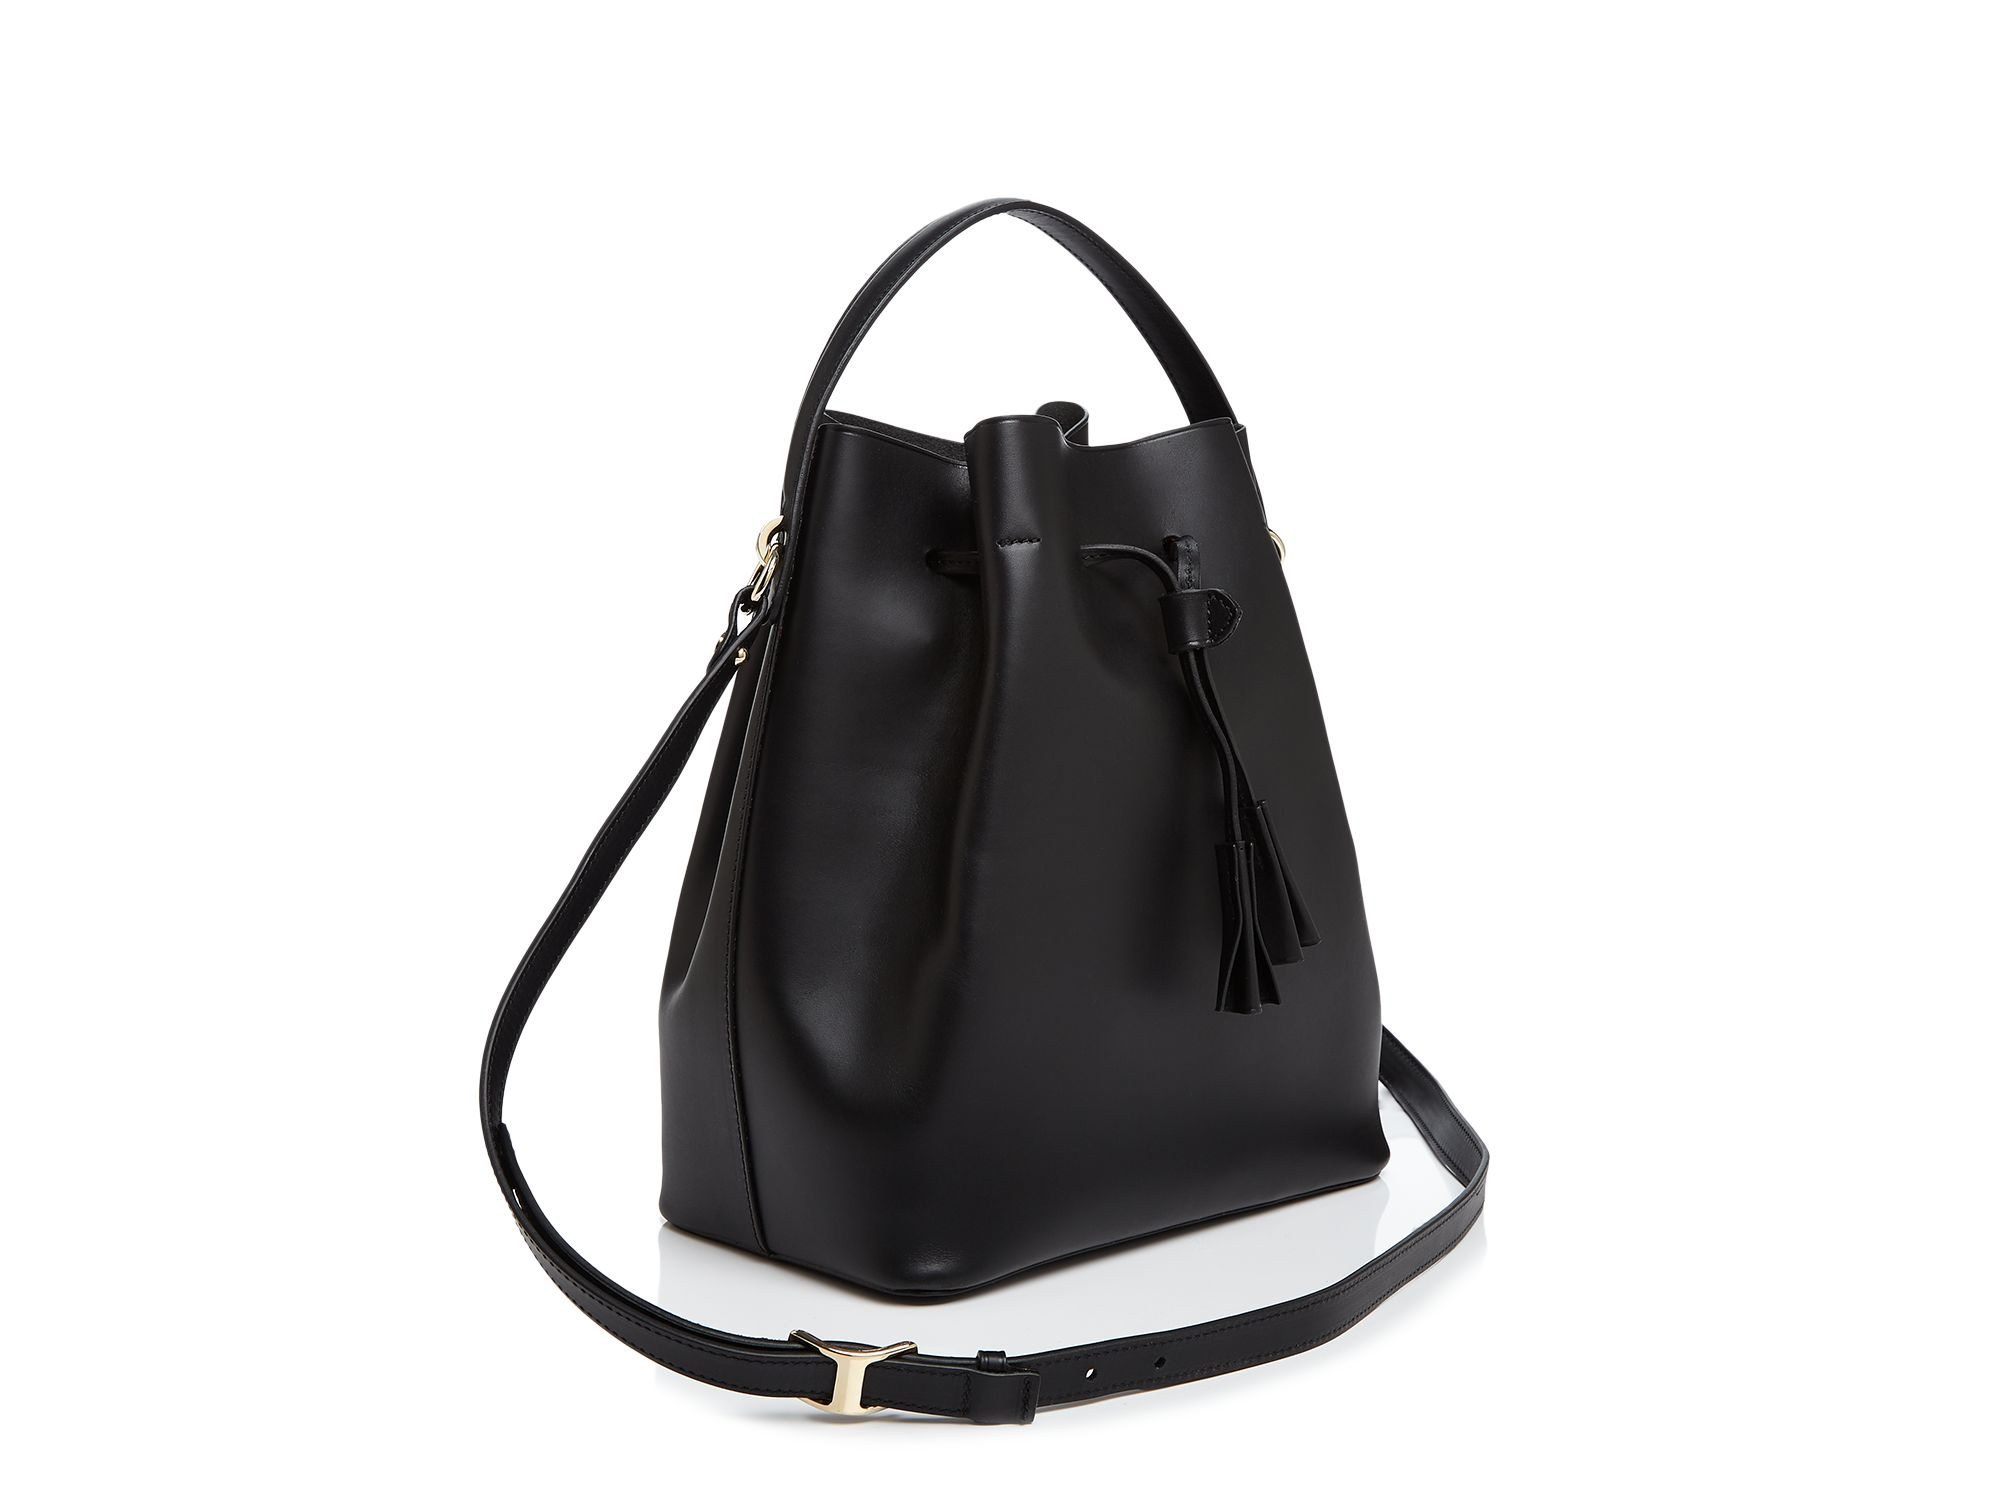 celine luggage handbags - celine-lefebure-black-karin-bucket-bag-product-4-765399215-normal.jpeg